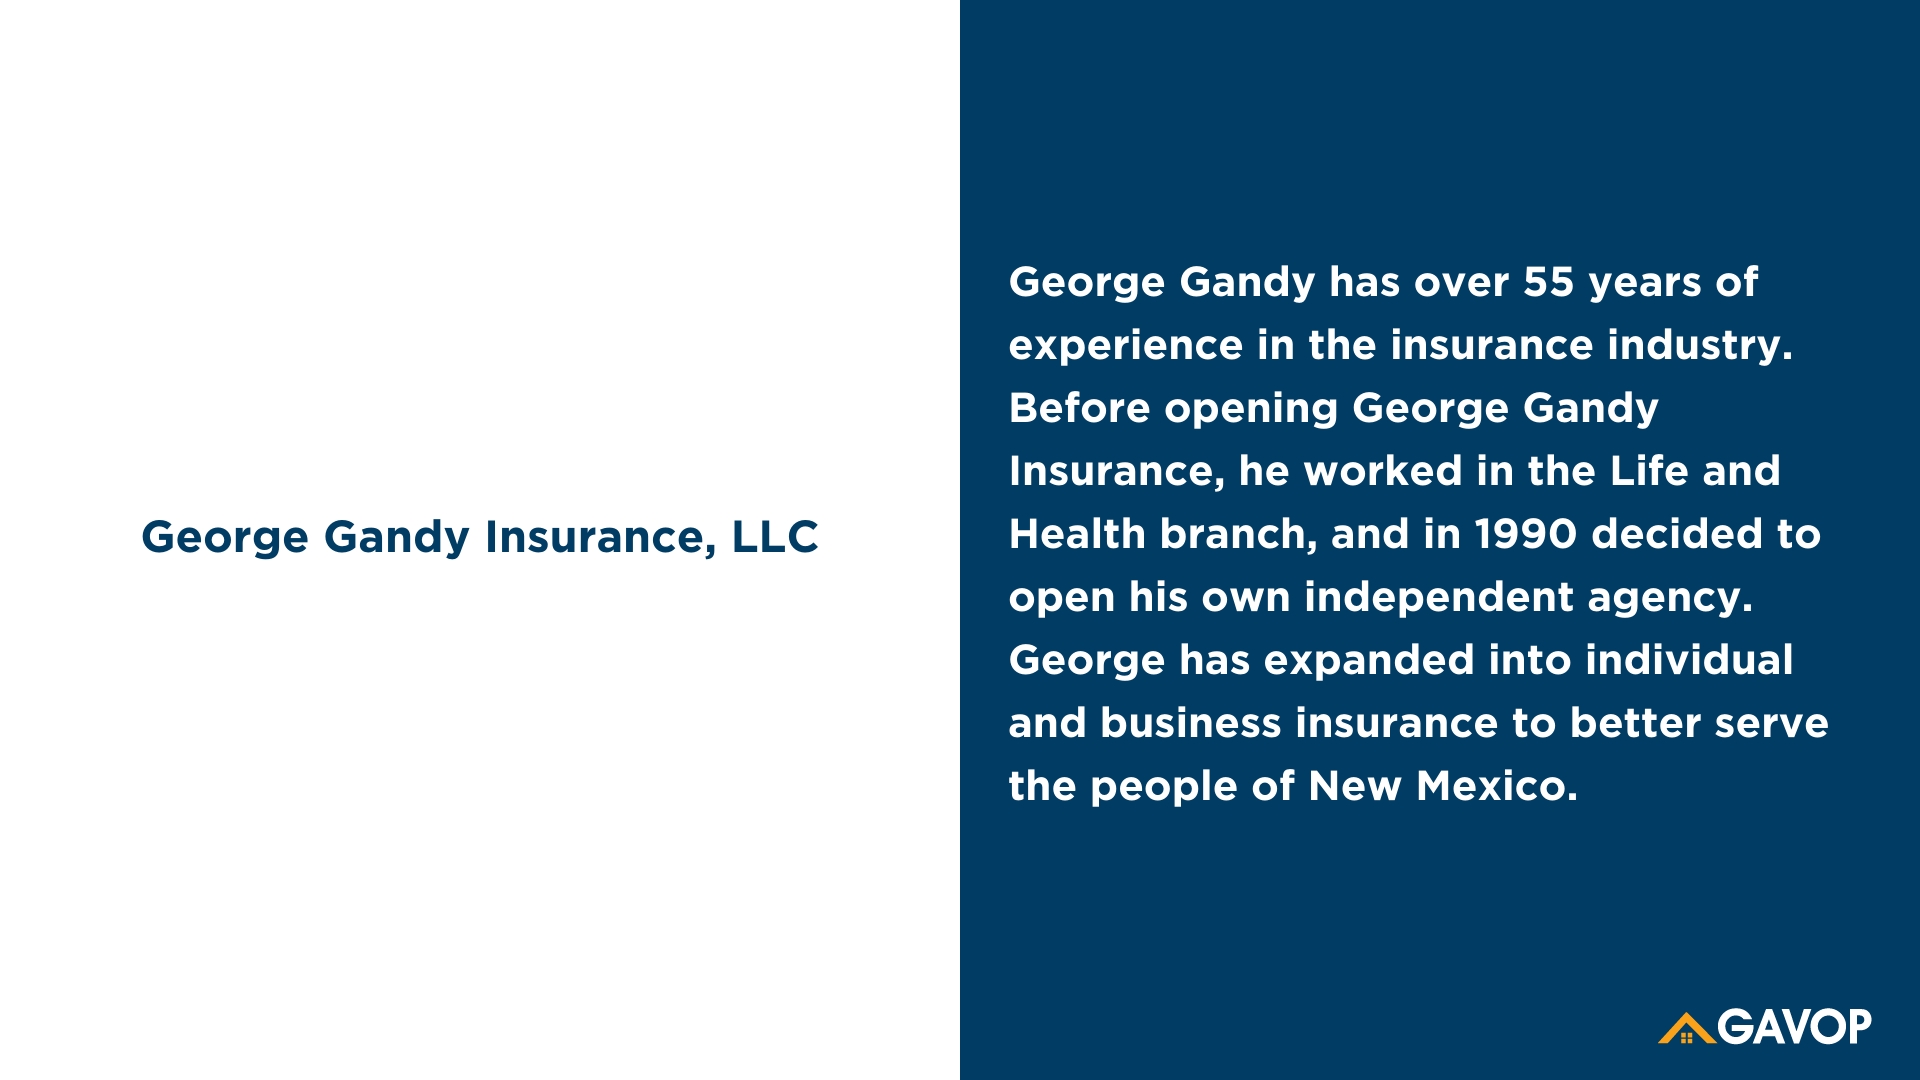 George Gandy Insurance, LLC